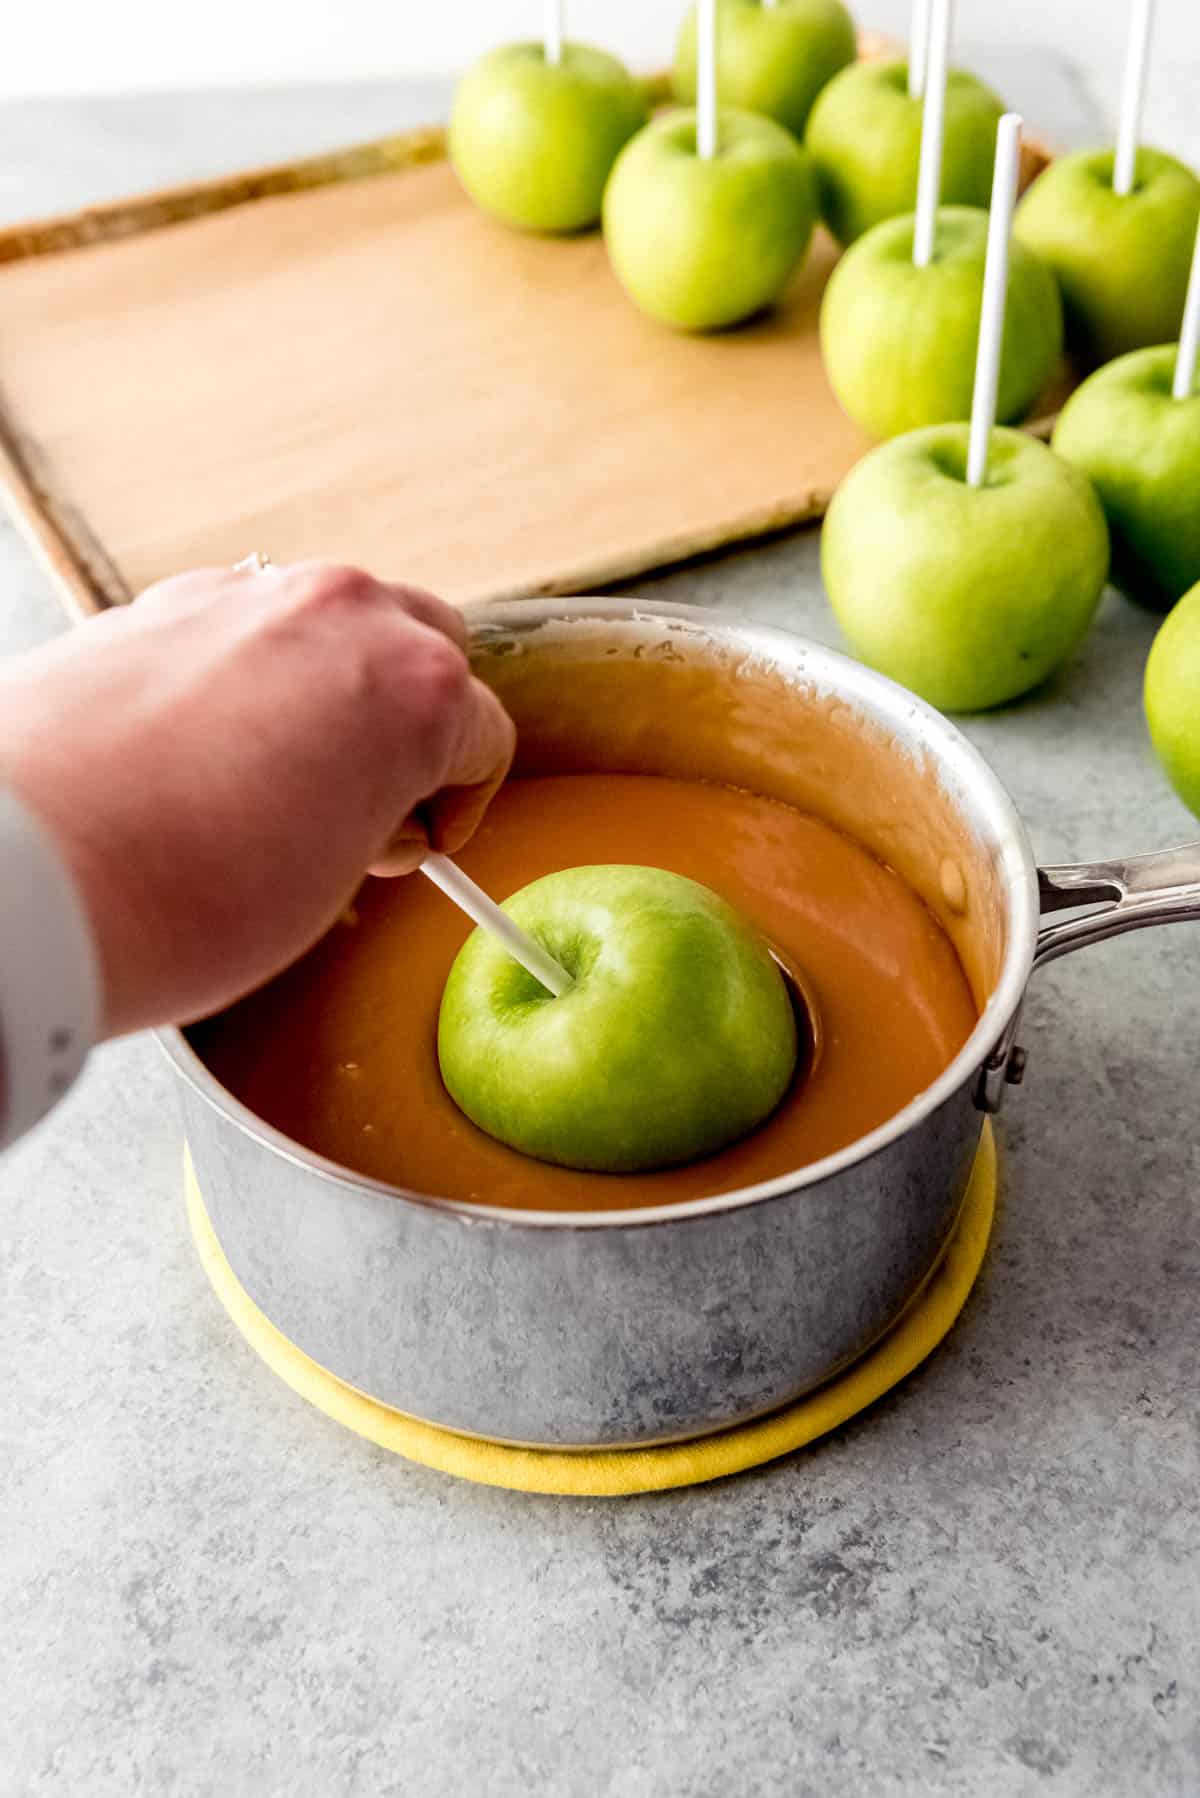 Dipping a green apple into homemade caramel.